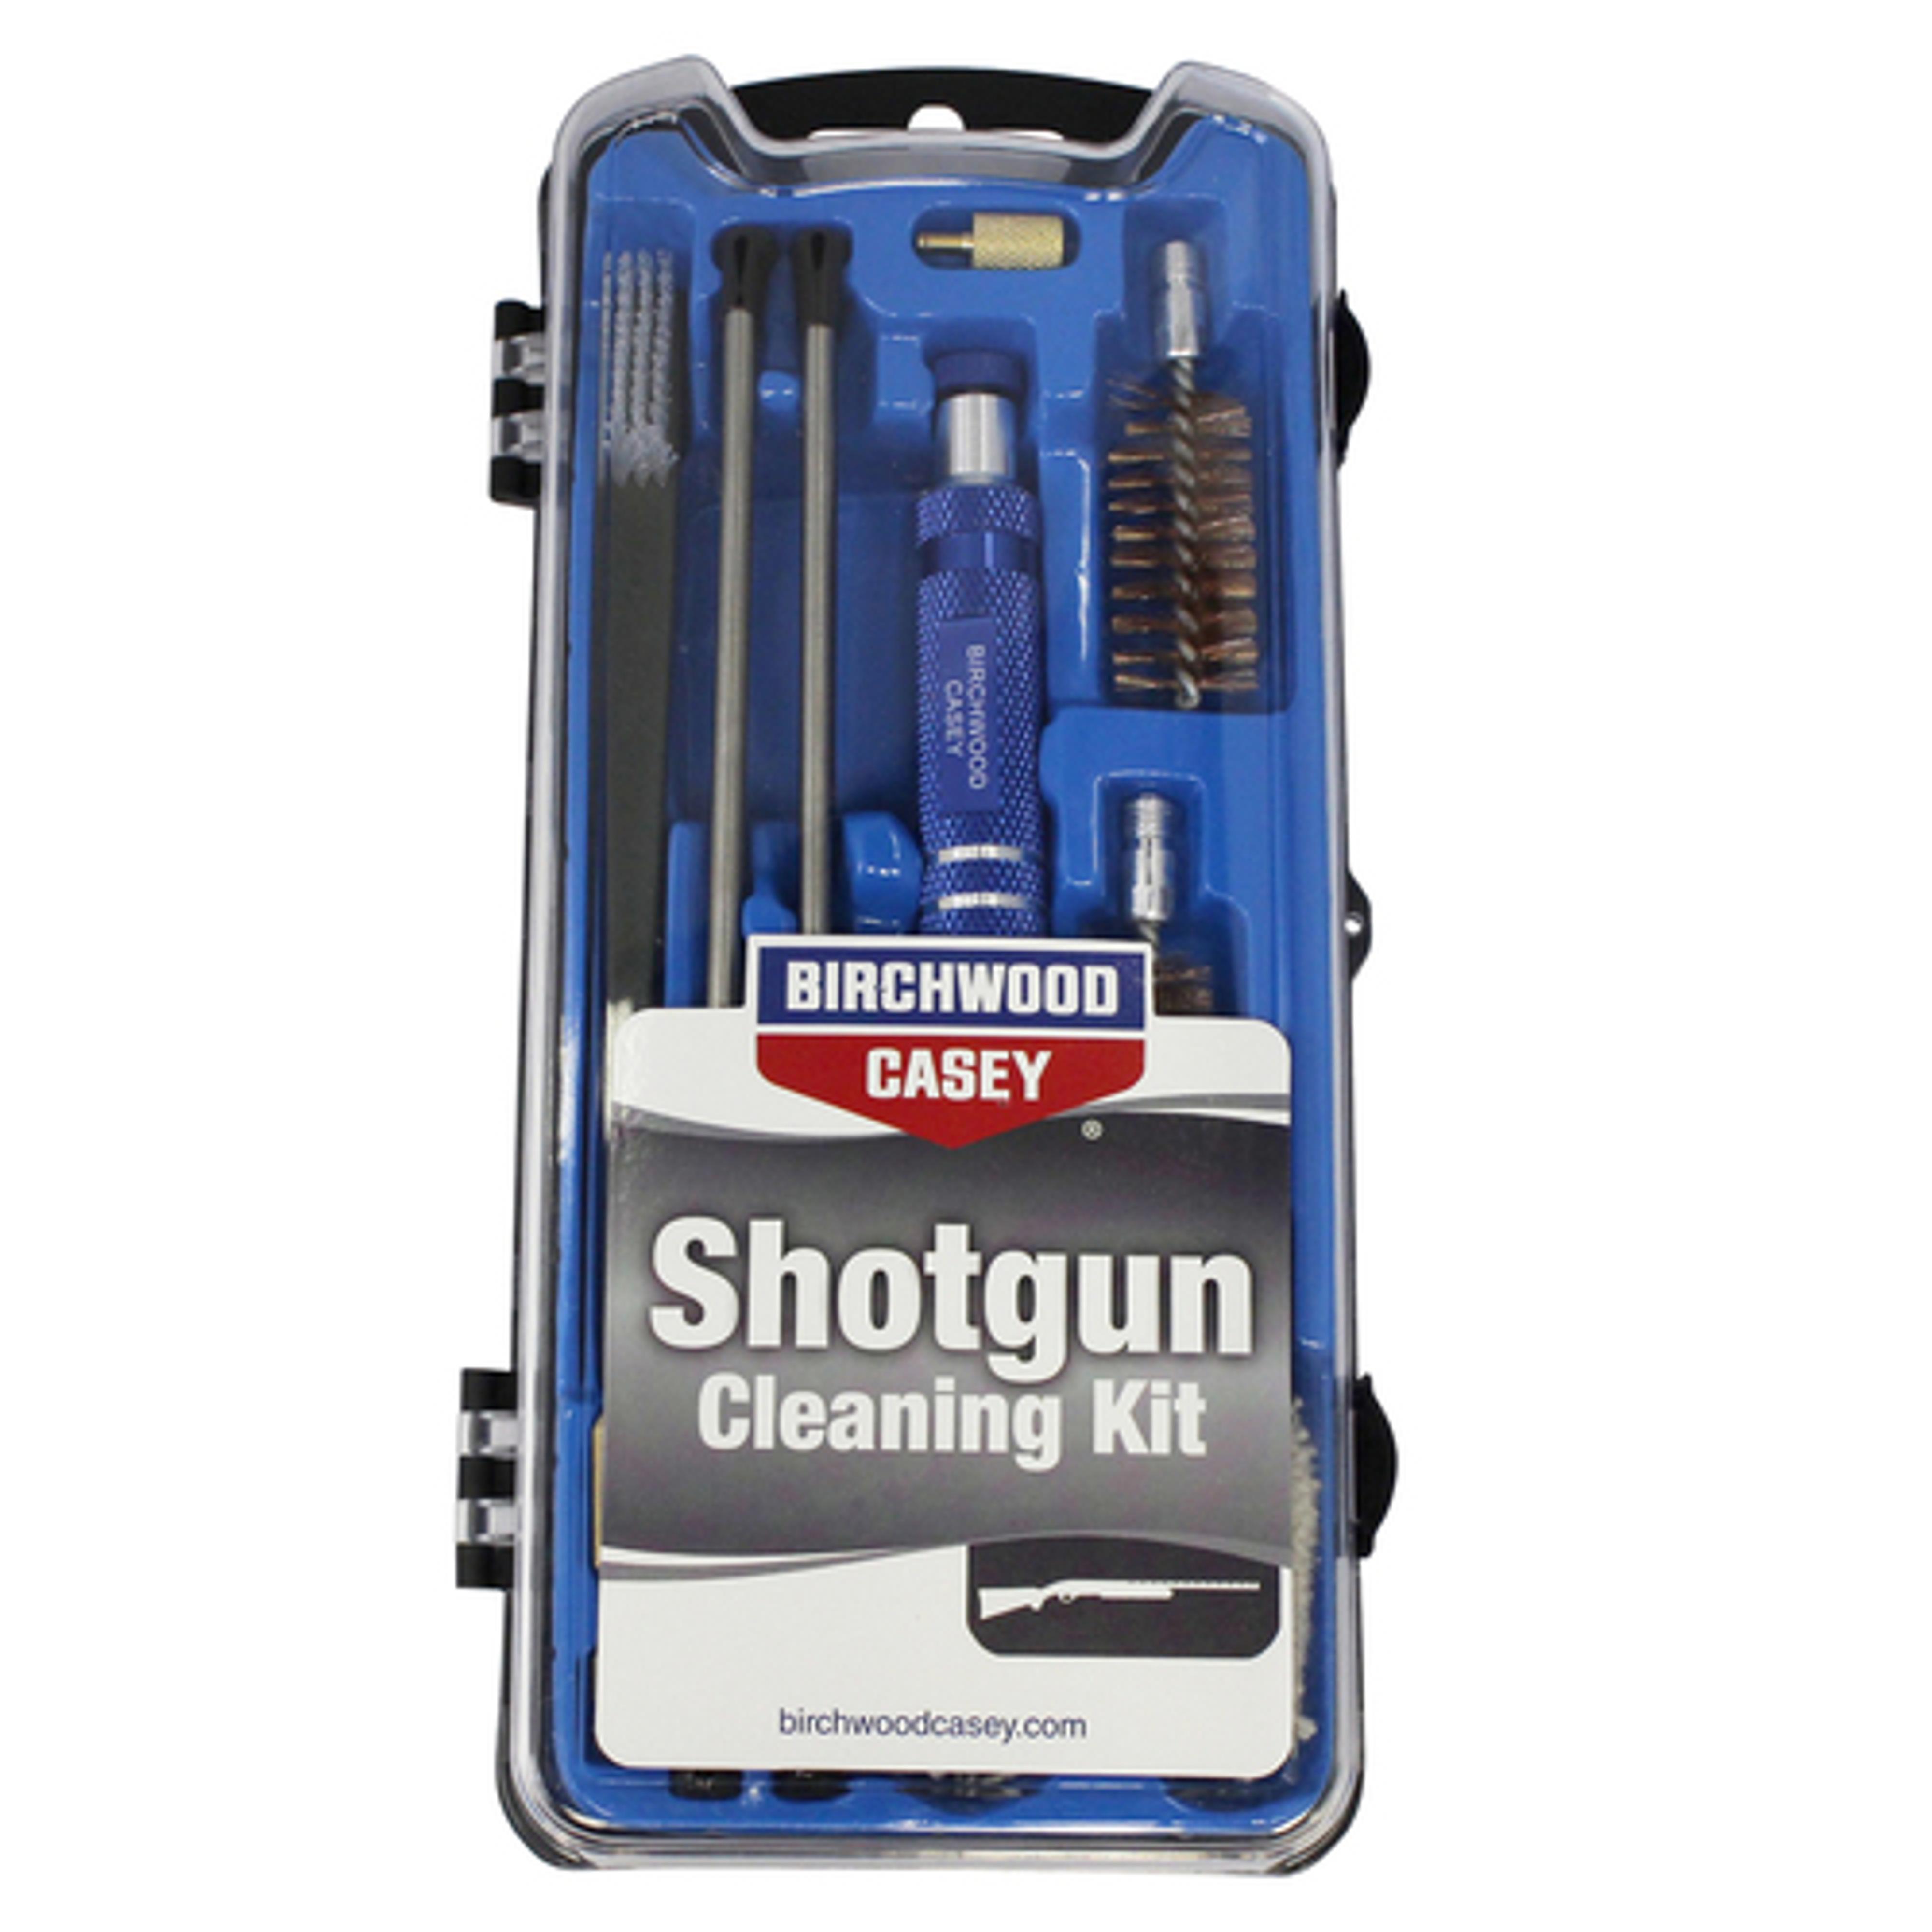  Shotgun Cleaning Kit